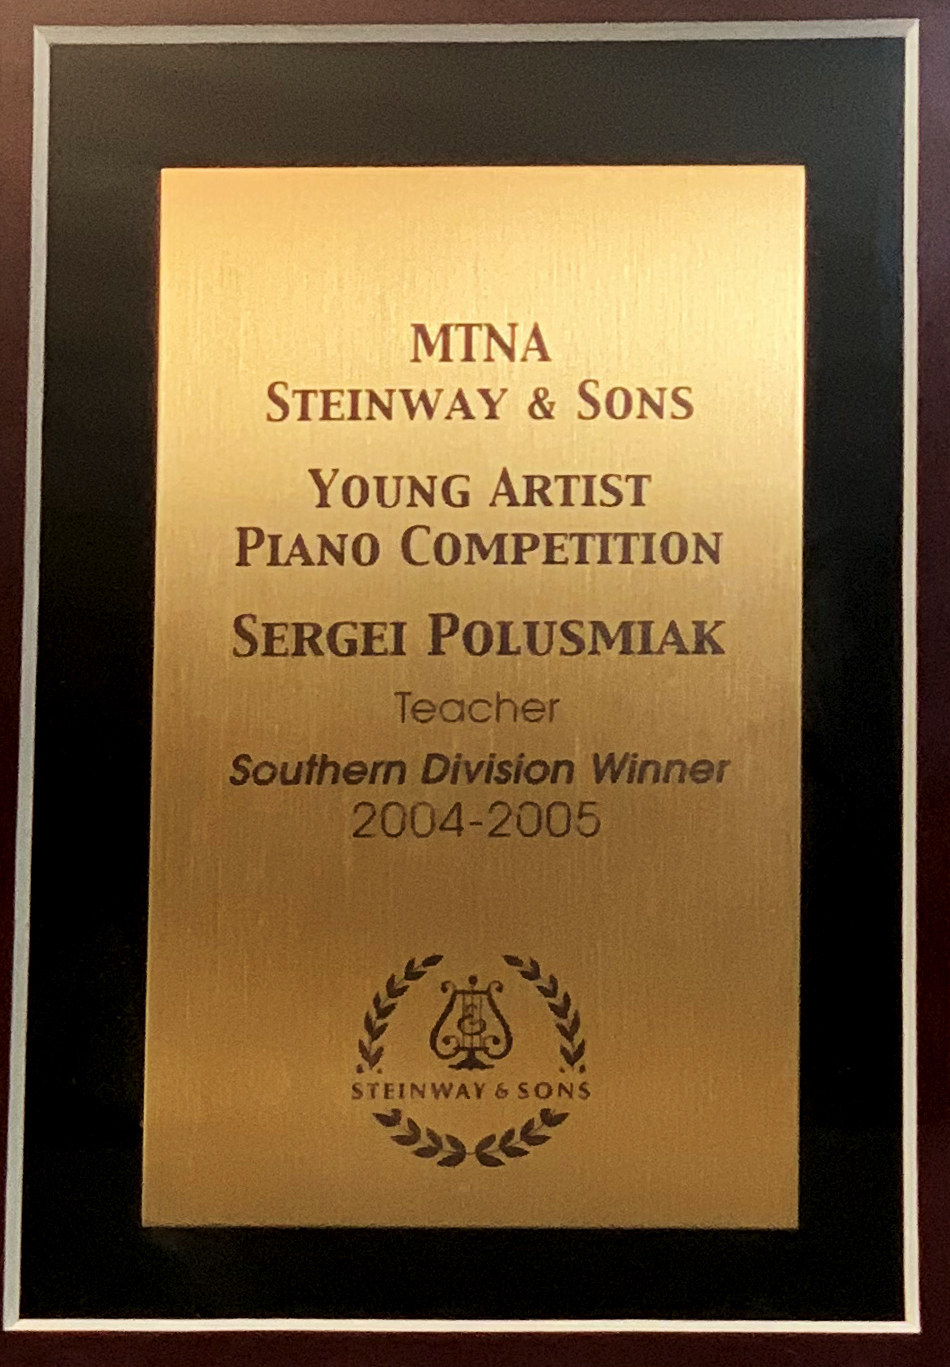 Sergei Polusmiak's 2004-2005 Steinway Piano Teacher Award